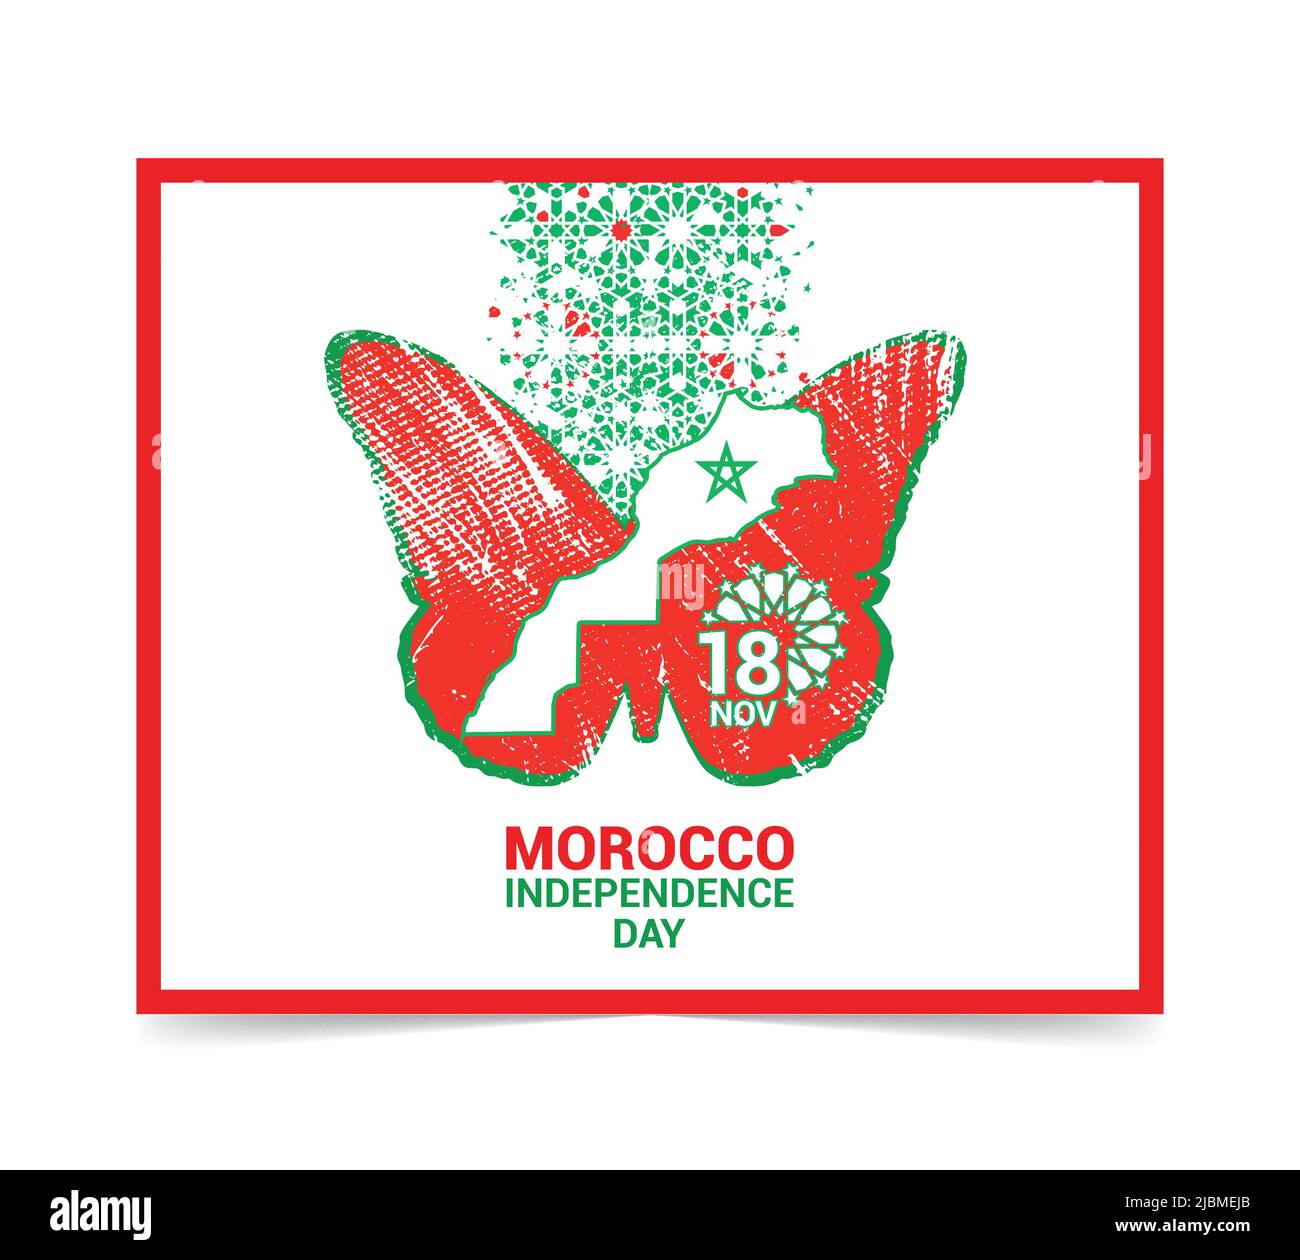 Jour de l'indépendance, carte du royaume du maroc avec motif d'effet de désintégration basé sur la conception géométrique de la mosaïque islamique.18 novembre. Symbole papillon Illustration de Vecteur